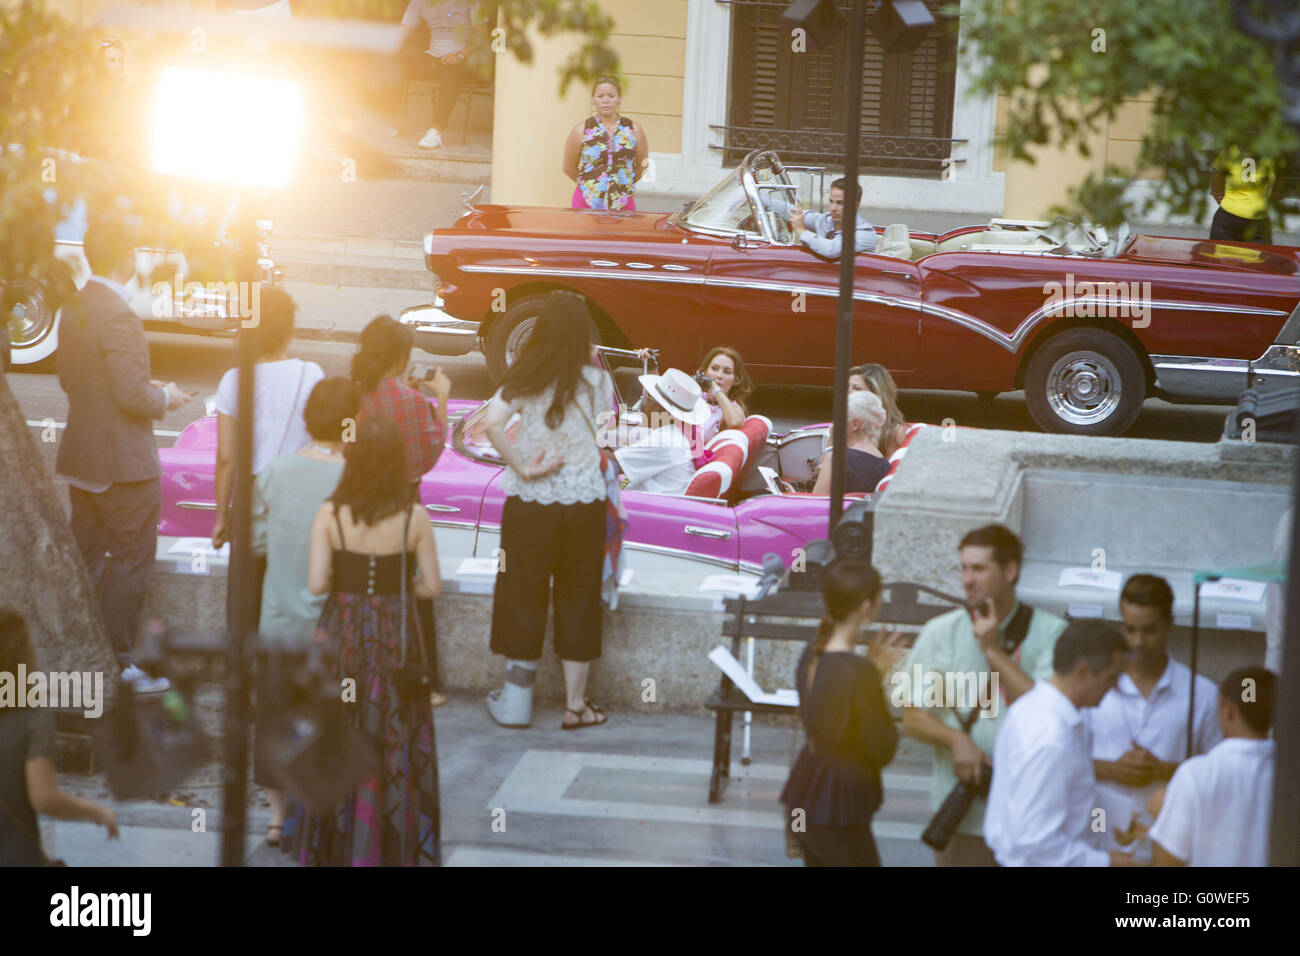 La Havane, Cuba, Cuba. 3 mai, 2016. Des stars d'un bain à dans l'île caribéenne de Cuba pour la ''Chanel cruise show'', d'arriver à le Paseo del Prado, large promenade bordée d'où le lieu a eu lieu à bonbon-cabriolets comme la couleur vintage live band cubain joue à La Havane, Cuba, le 3 mai 2016. Chanel a embauché plus de 150 ''almendrones'' (le Old US cars) aménagée comme un emblème de l'île socialiste à transporter les clients autour de la ville.La maison de couture française Chanel a mis en scène son spectacle dans la capitale cubaine La Havane - le premier défilé de l'Internationale communiste depuis 1959 revolutio Banque D'Images